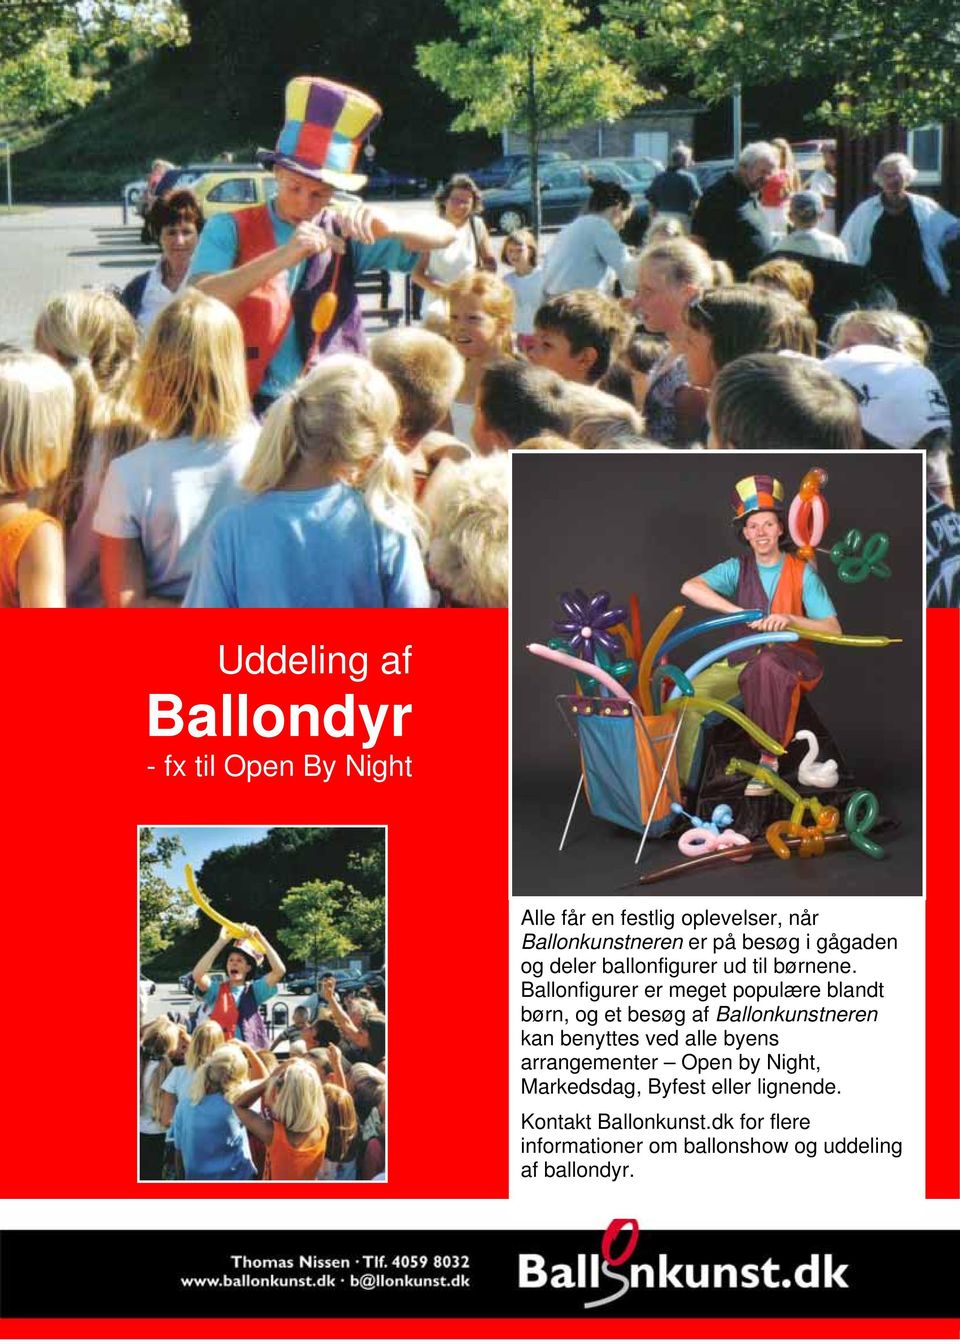 Ballonfigurer er meget populære blandt børn, og et besøg af Ballonkunstneren kan benyttes ved alle